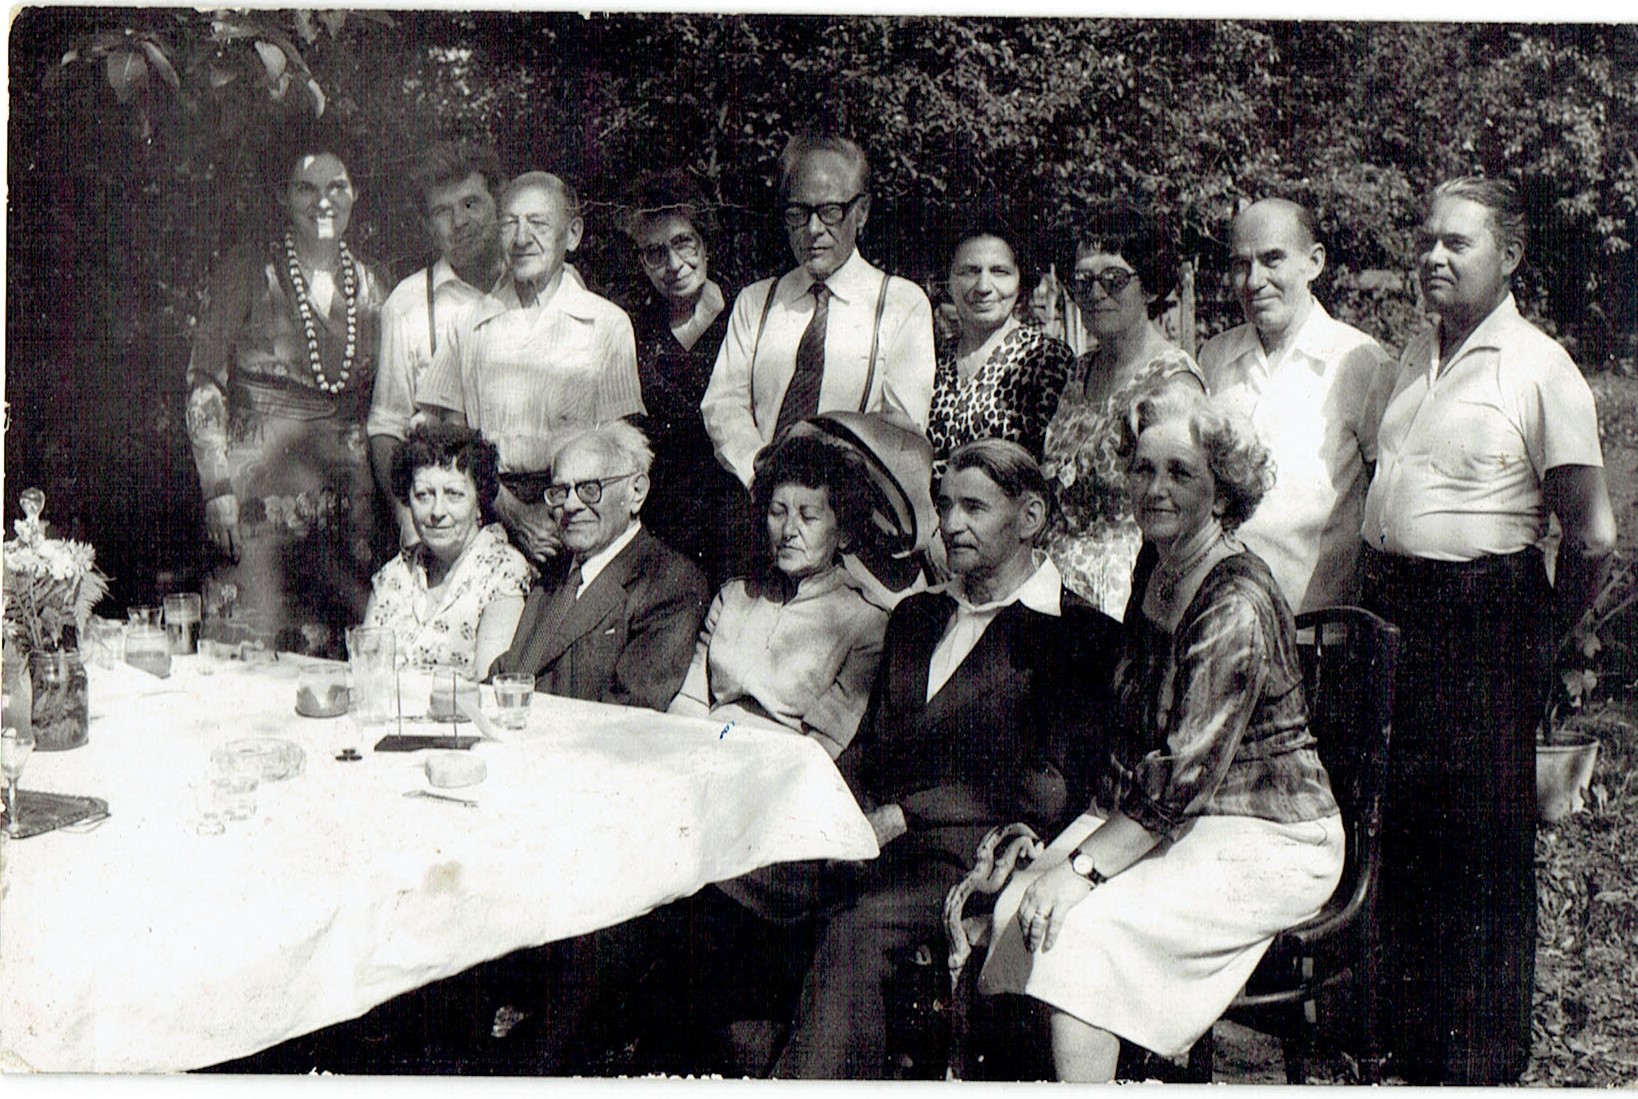 Lakatos Istvánnal, Jagamas Jánossal, Jodál Gáborral, Major Ferenccel és másokkal (lásd Aláírások), 1983